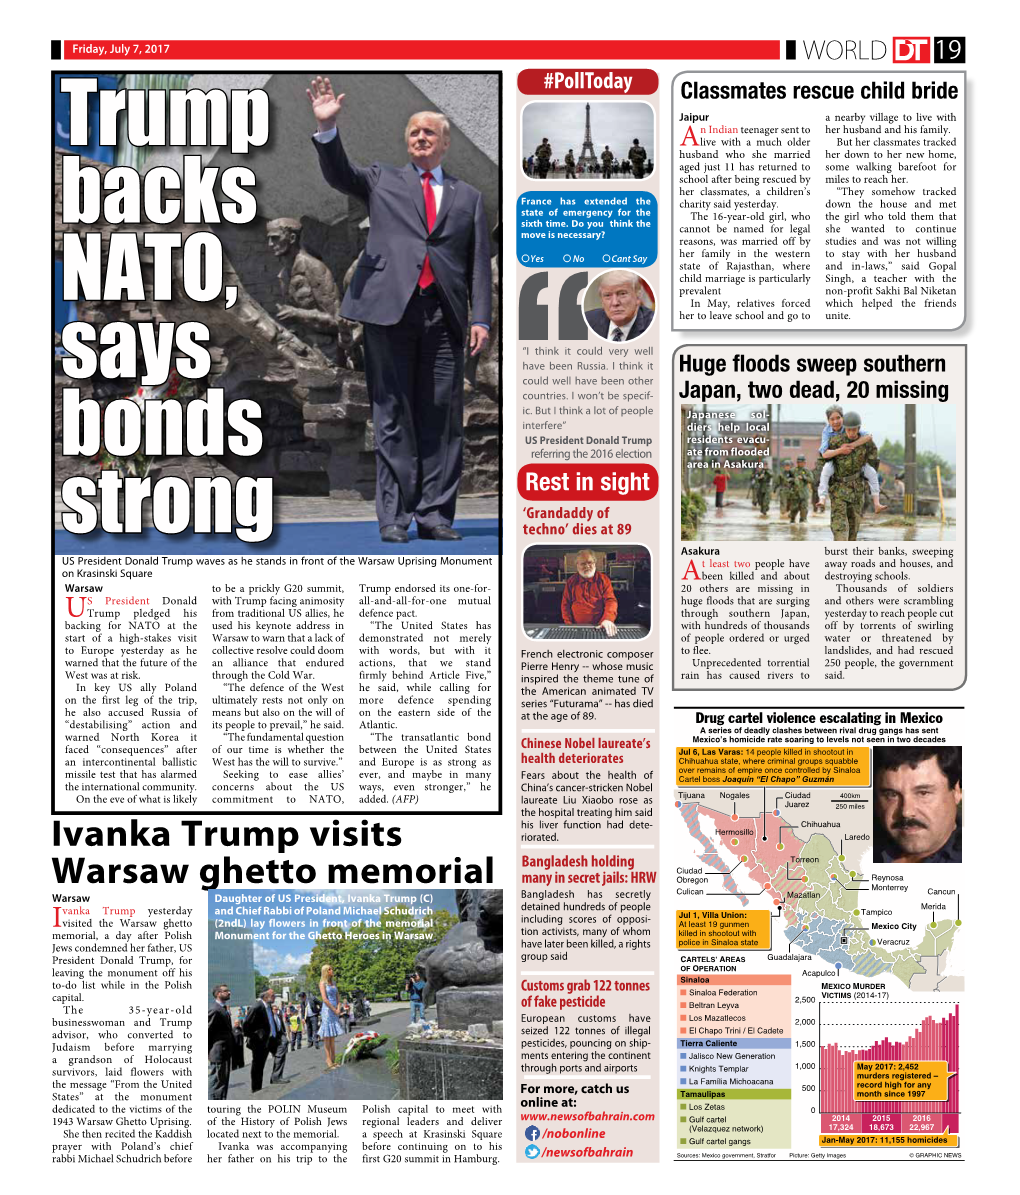 Trump Backs NATO, Says Bonds Strong